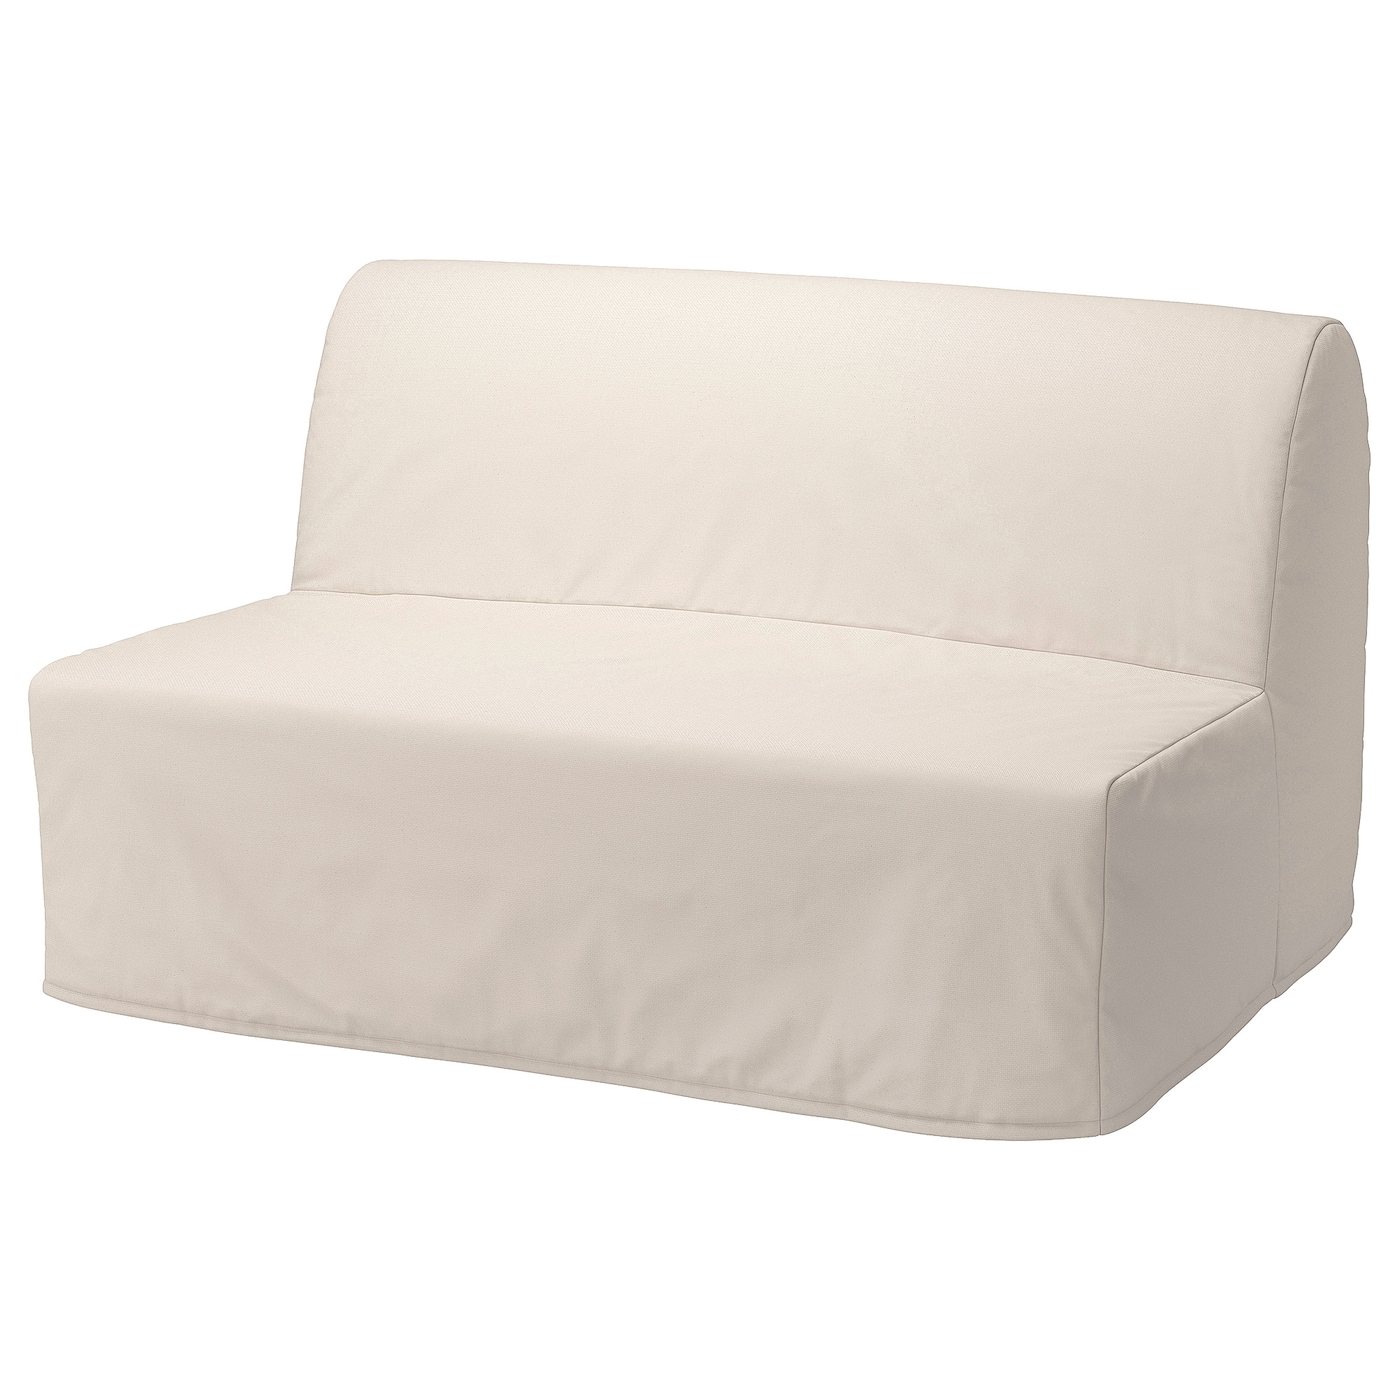 LYCKSELE MURBO 2-х раскладной диван-кровать, Ранста натуральный цвет IKEA